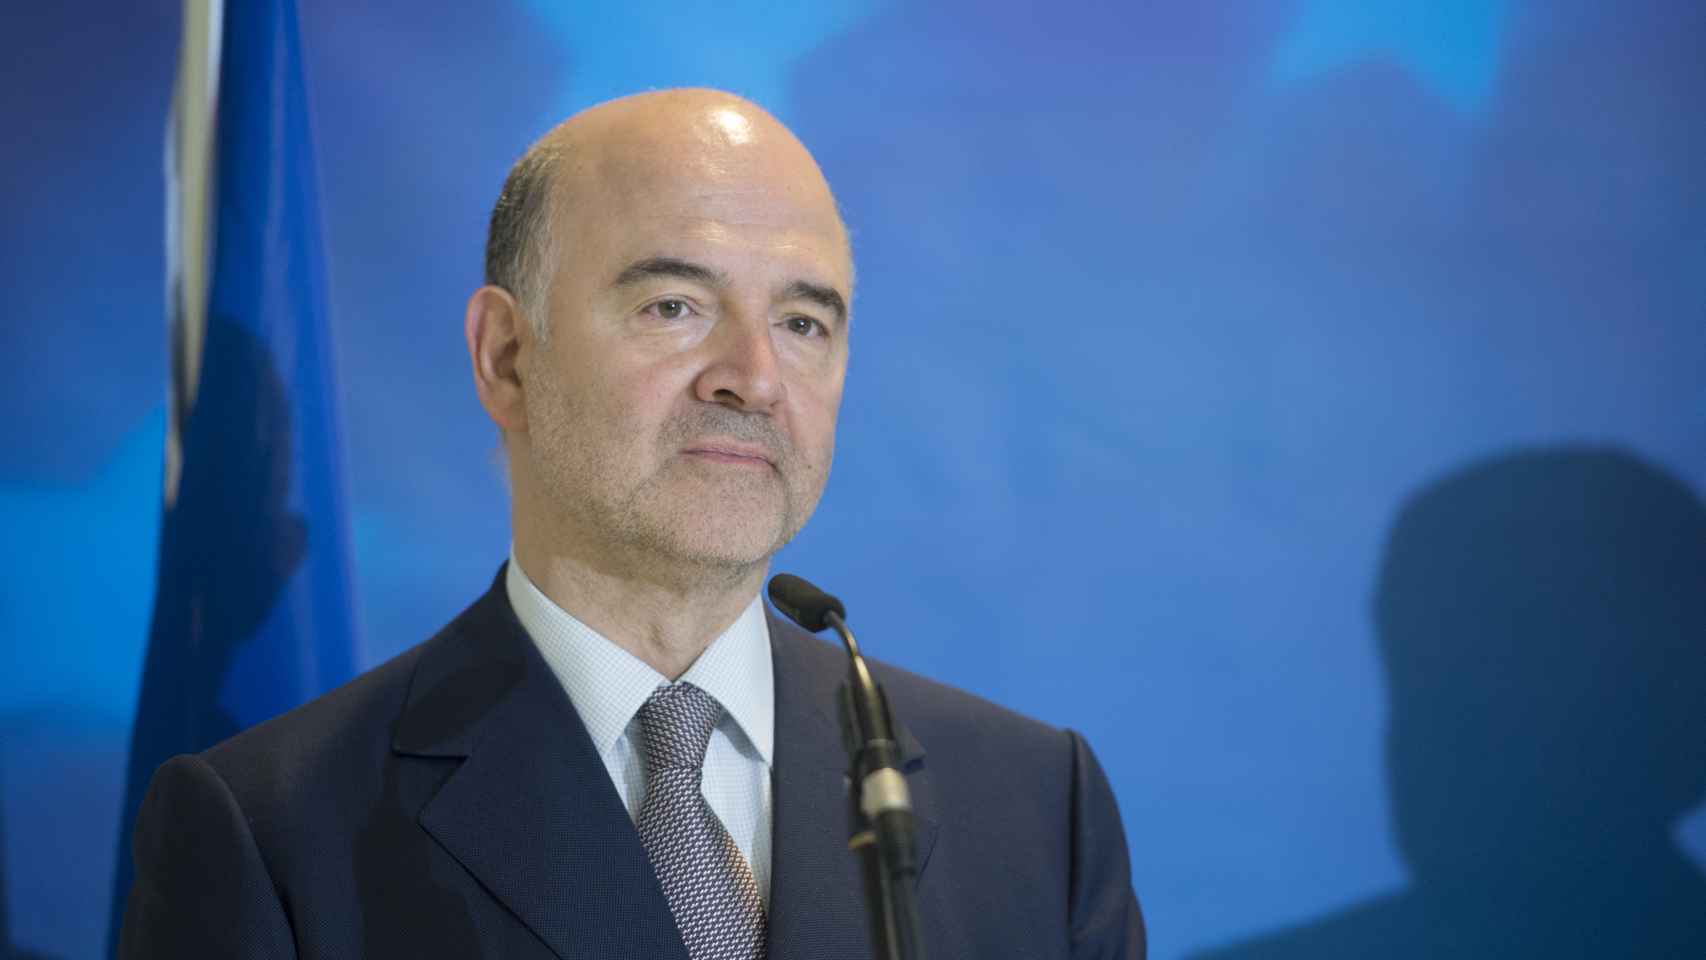 El comisario Moscovici promete aplicar el Pacto de Estabilidad de forma inteligente